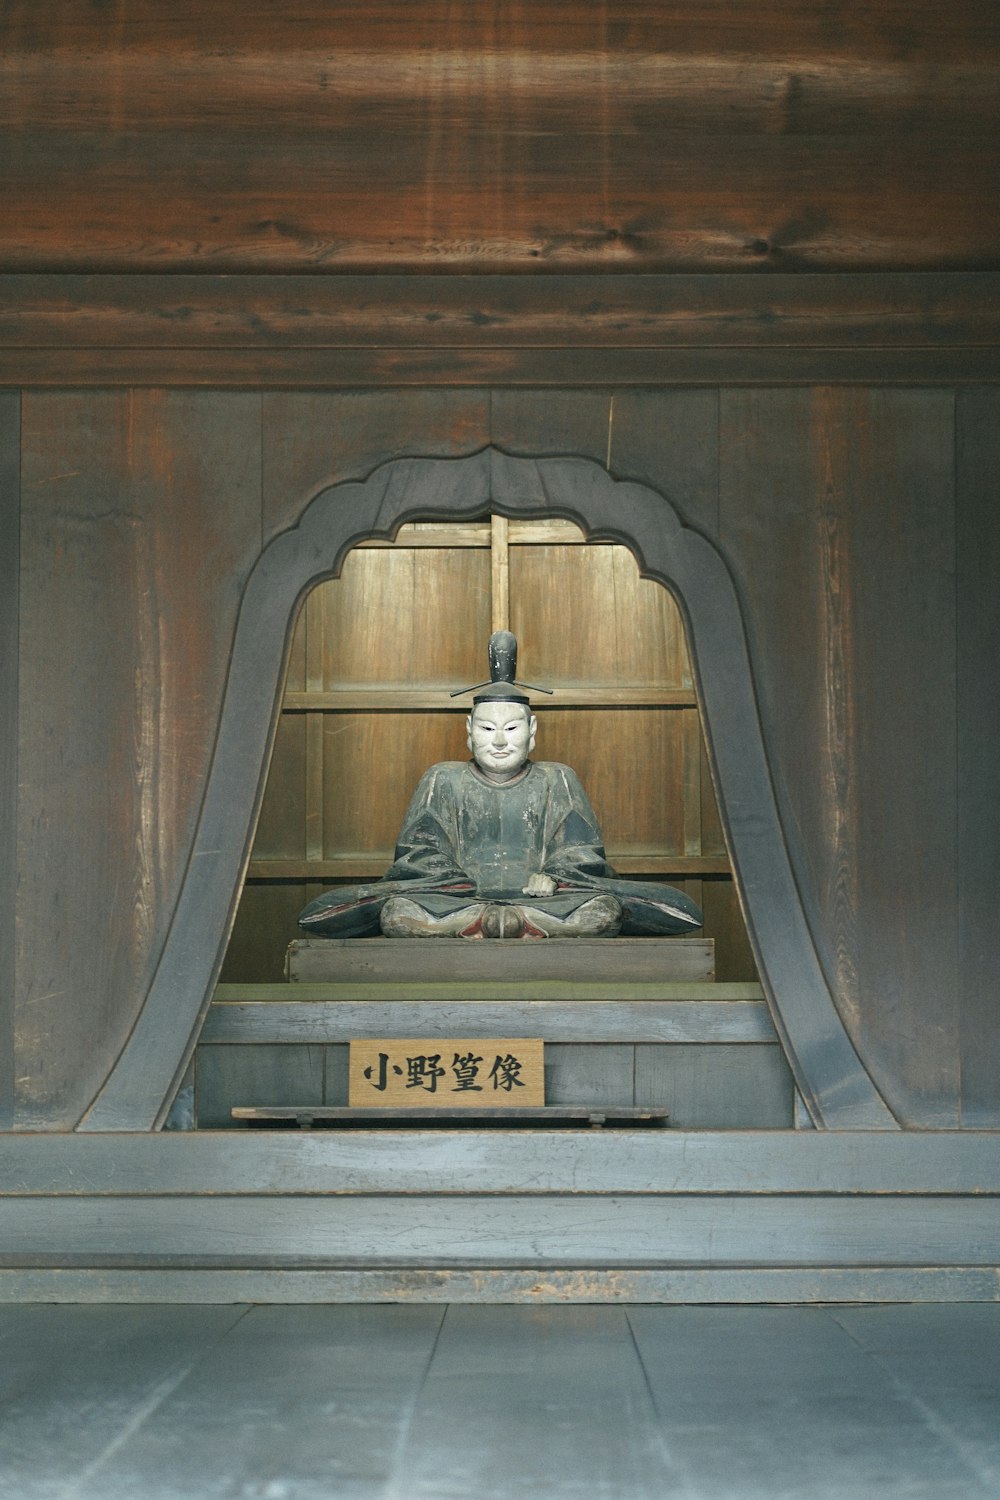 una estatua de una persona sentada en un santuario